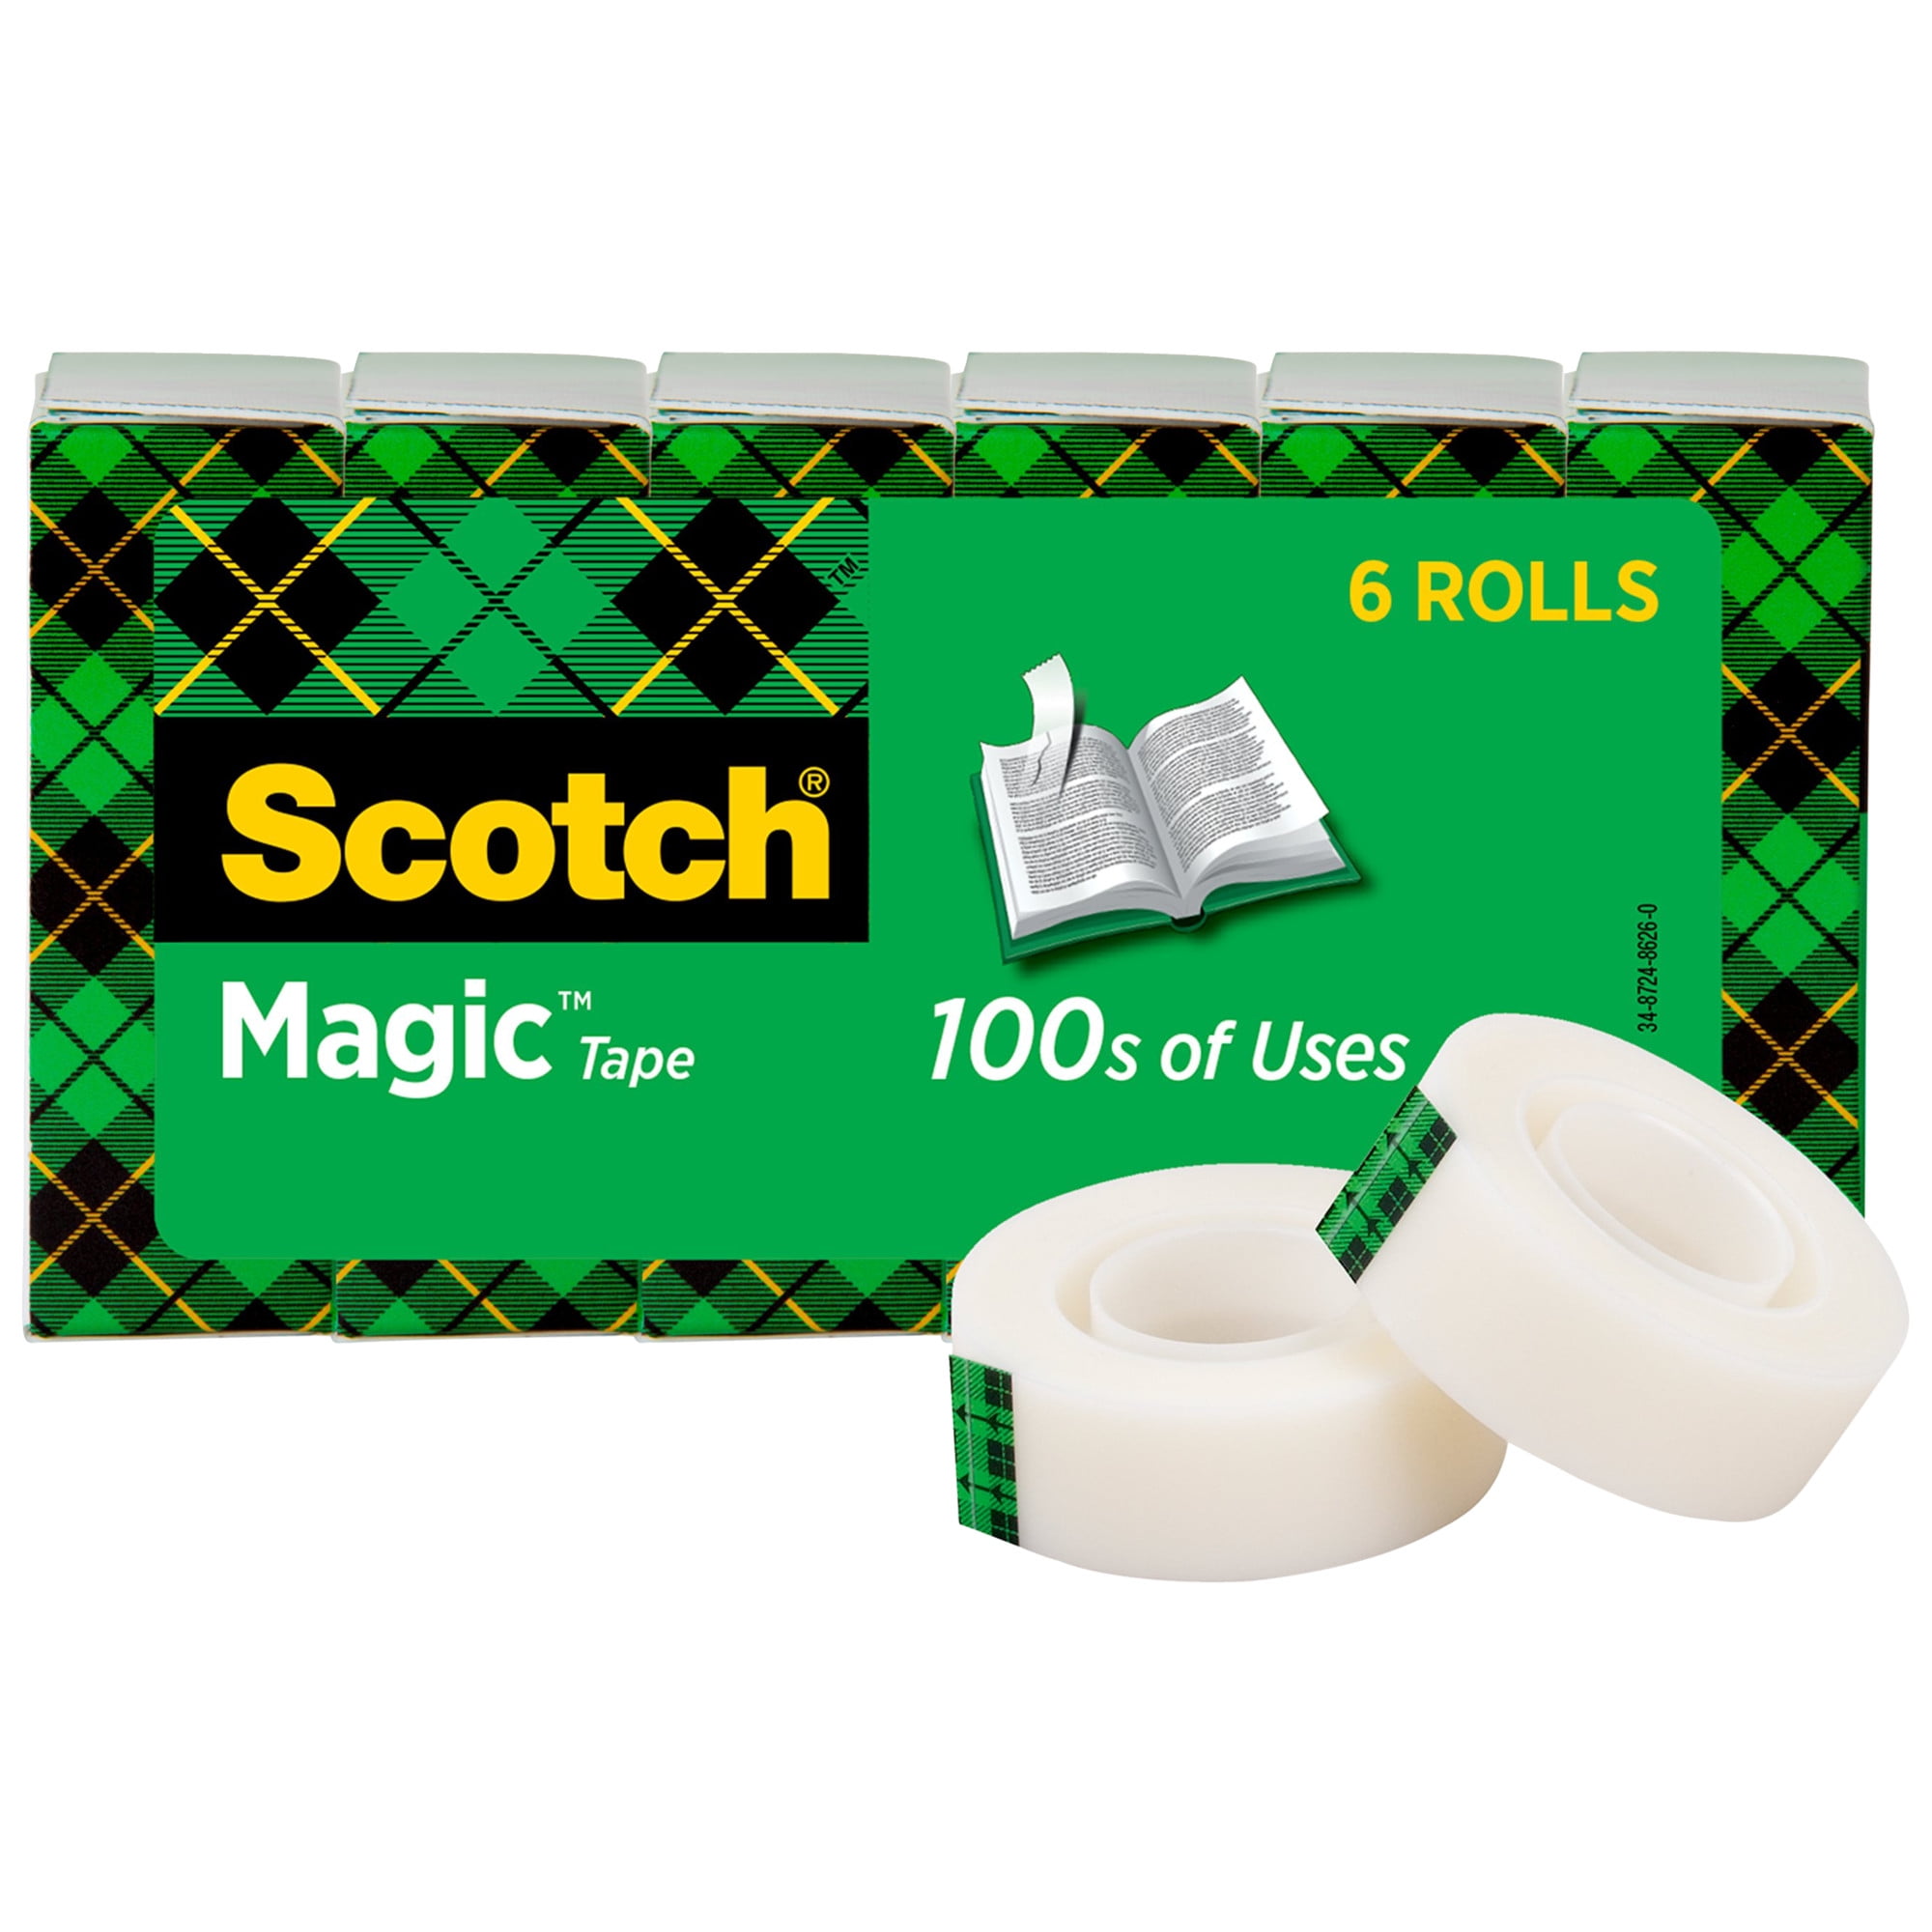 Scotch-brite Scotch 3/4W Magic Tape - MMM6122 